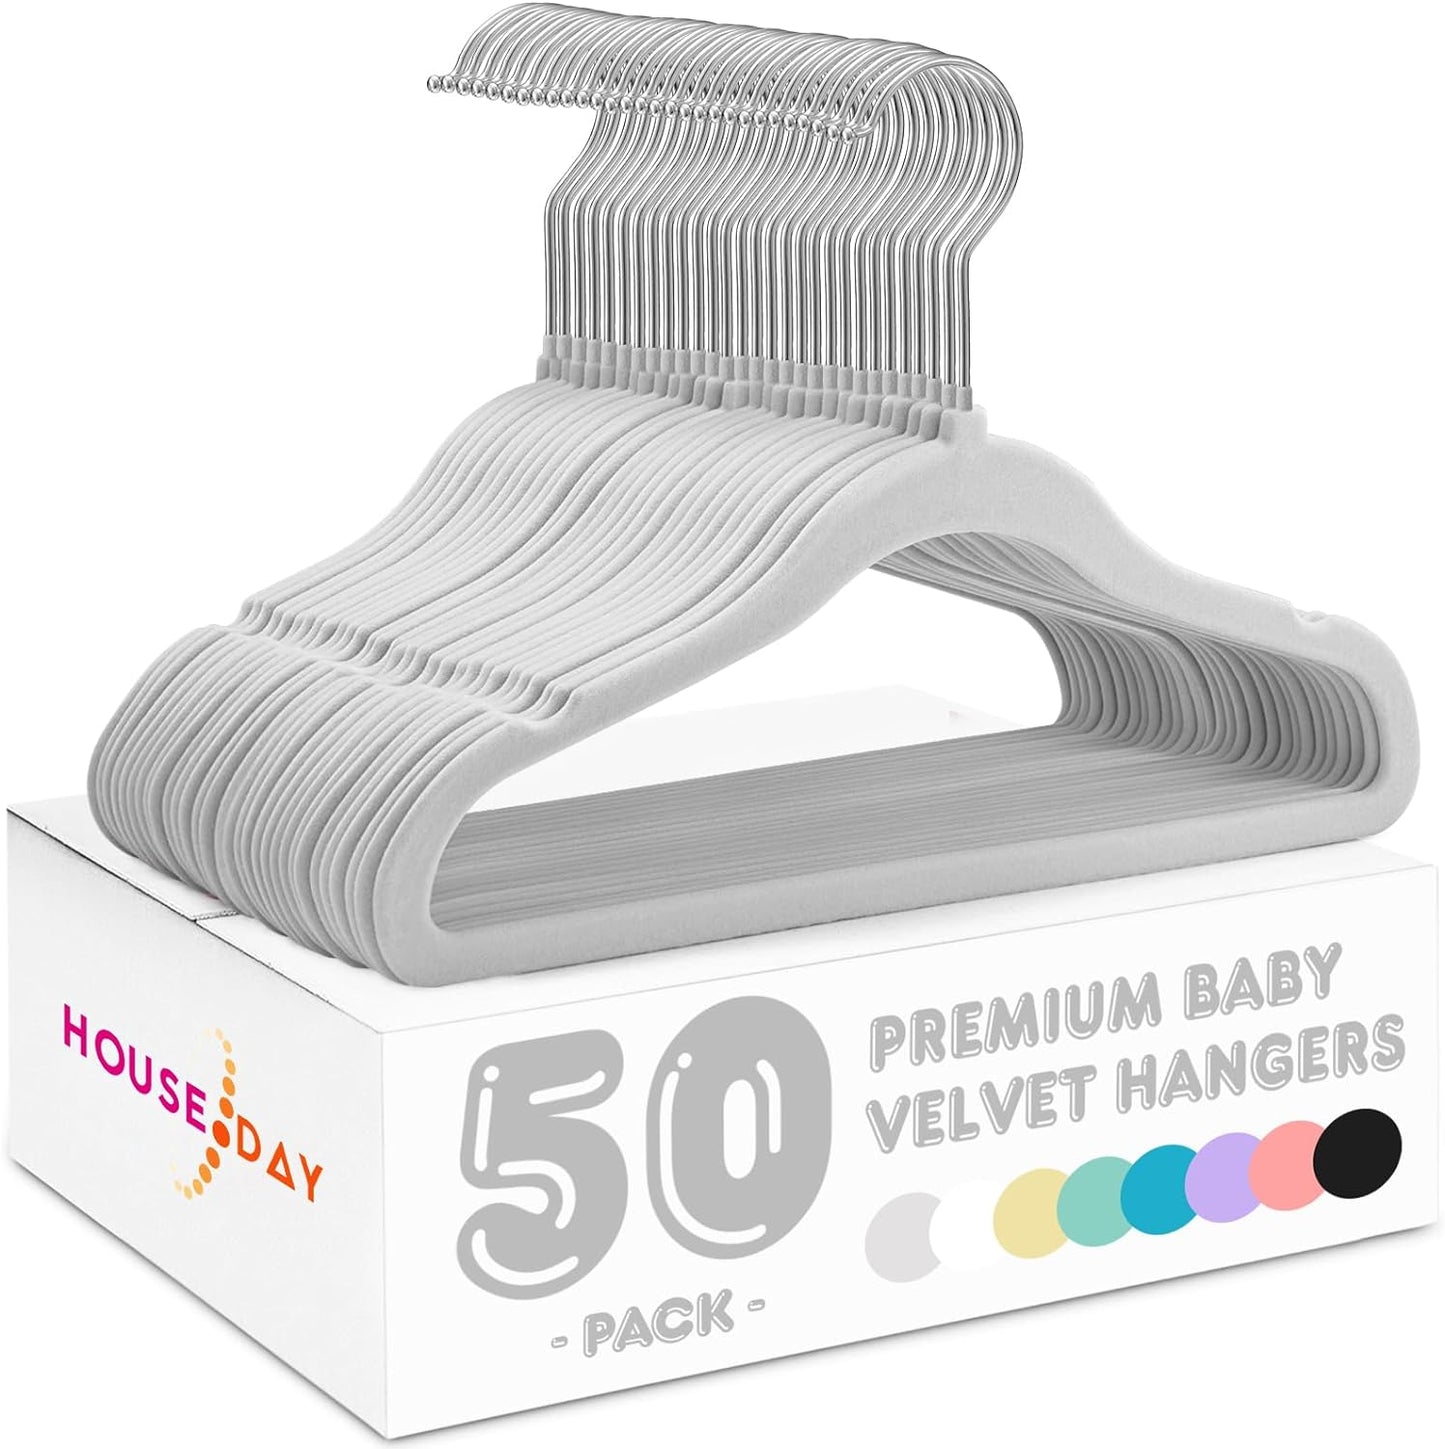 HOUSE DAY 11 Inch Velvet Baby Hangers Light Grey 50 Pack